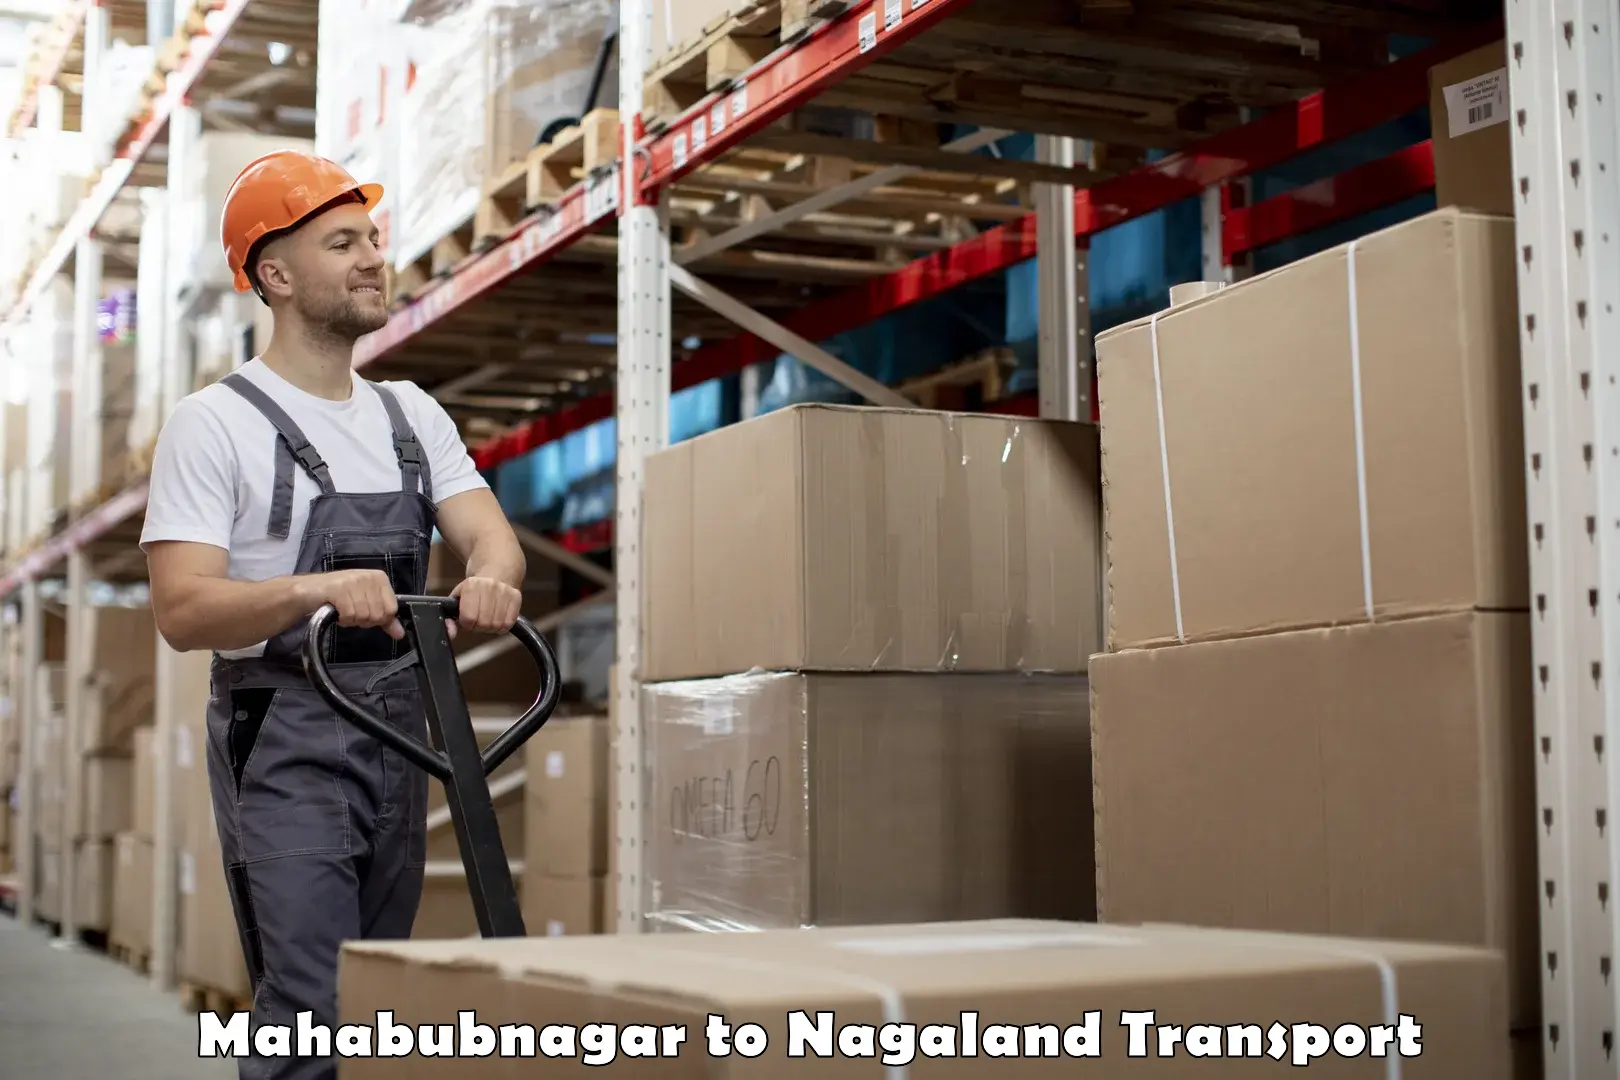 Shipping partner Mahabubnagar to Nagaland